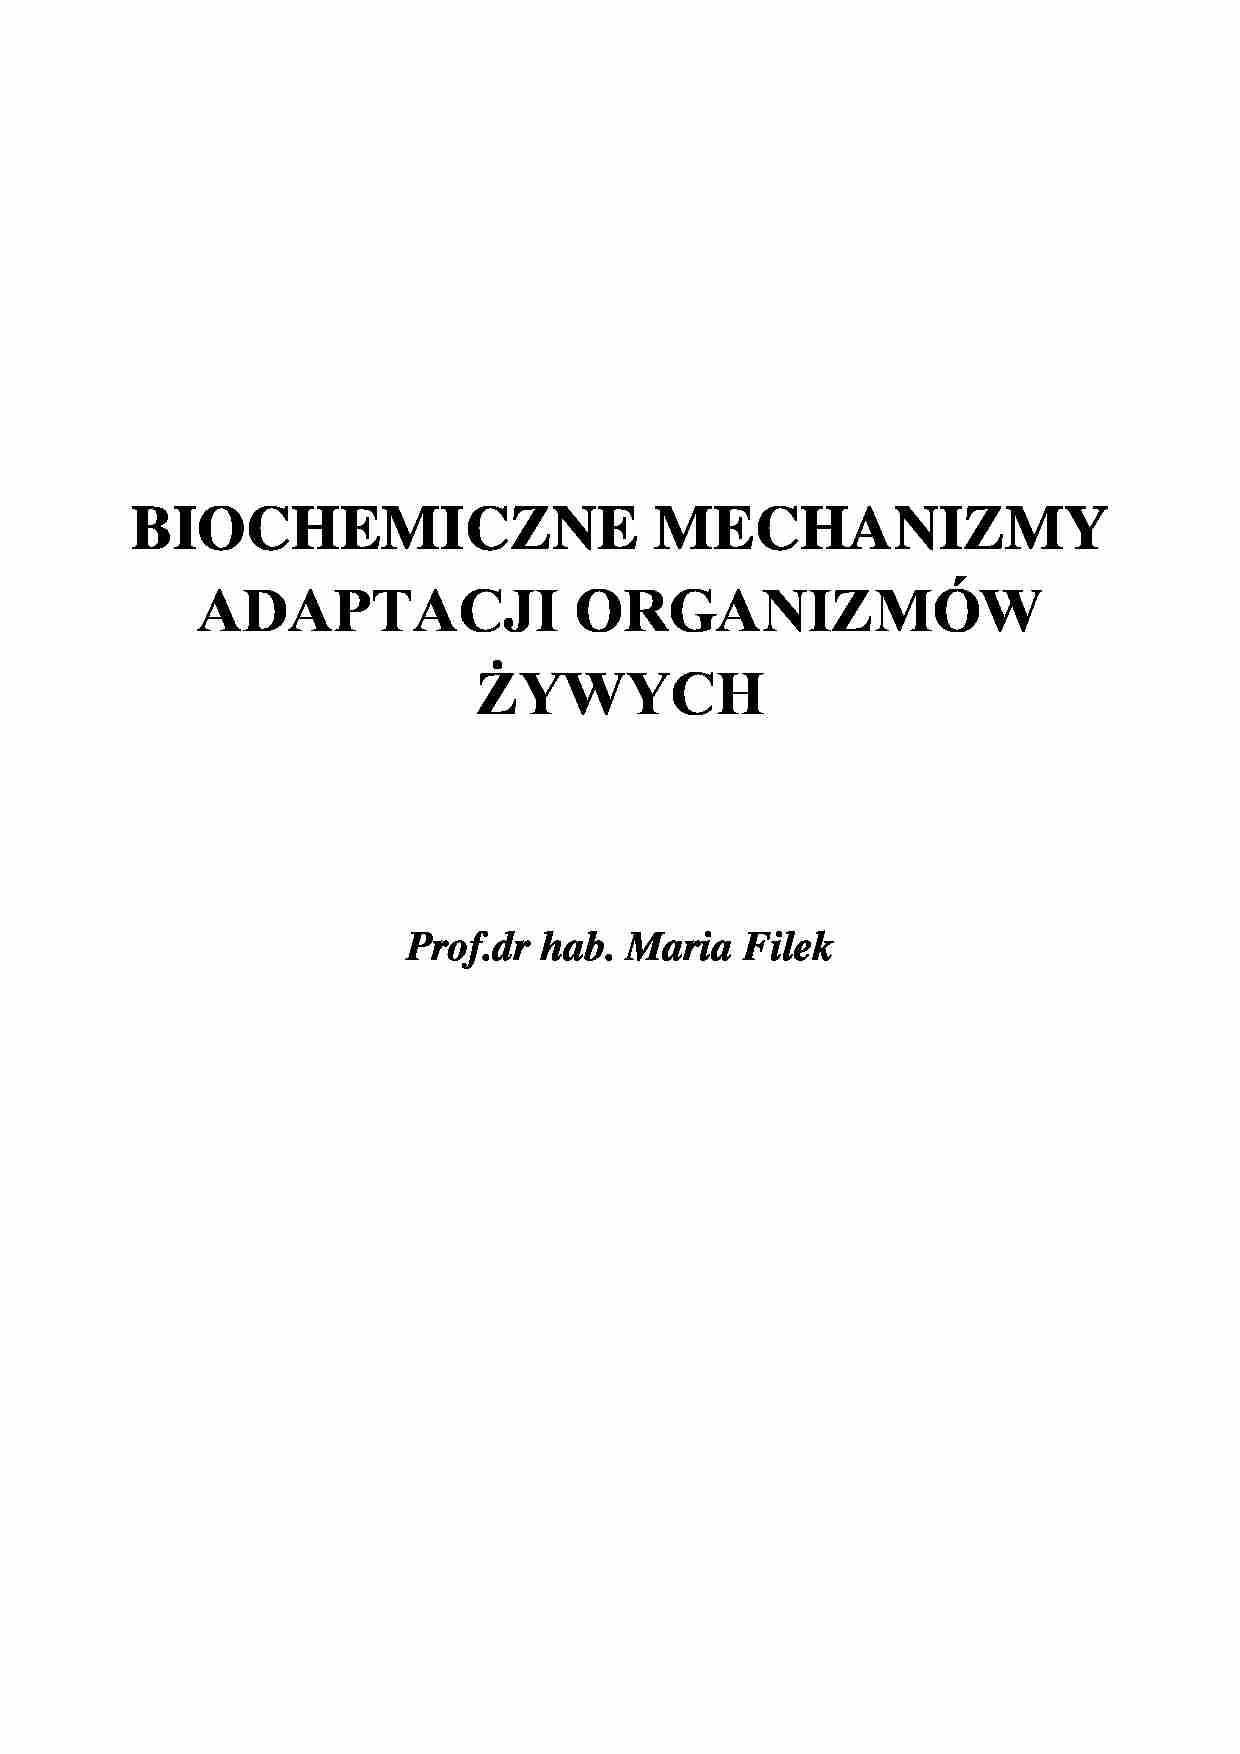 Biochemiczne mechanizmy adaptacji organizmów żywych - wykład - strona 1